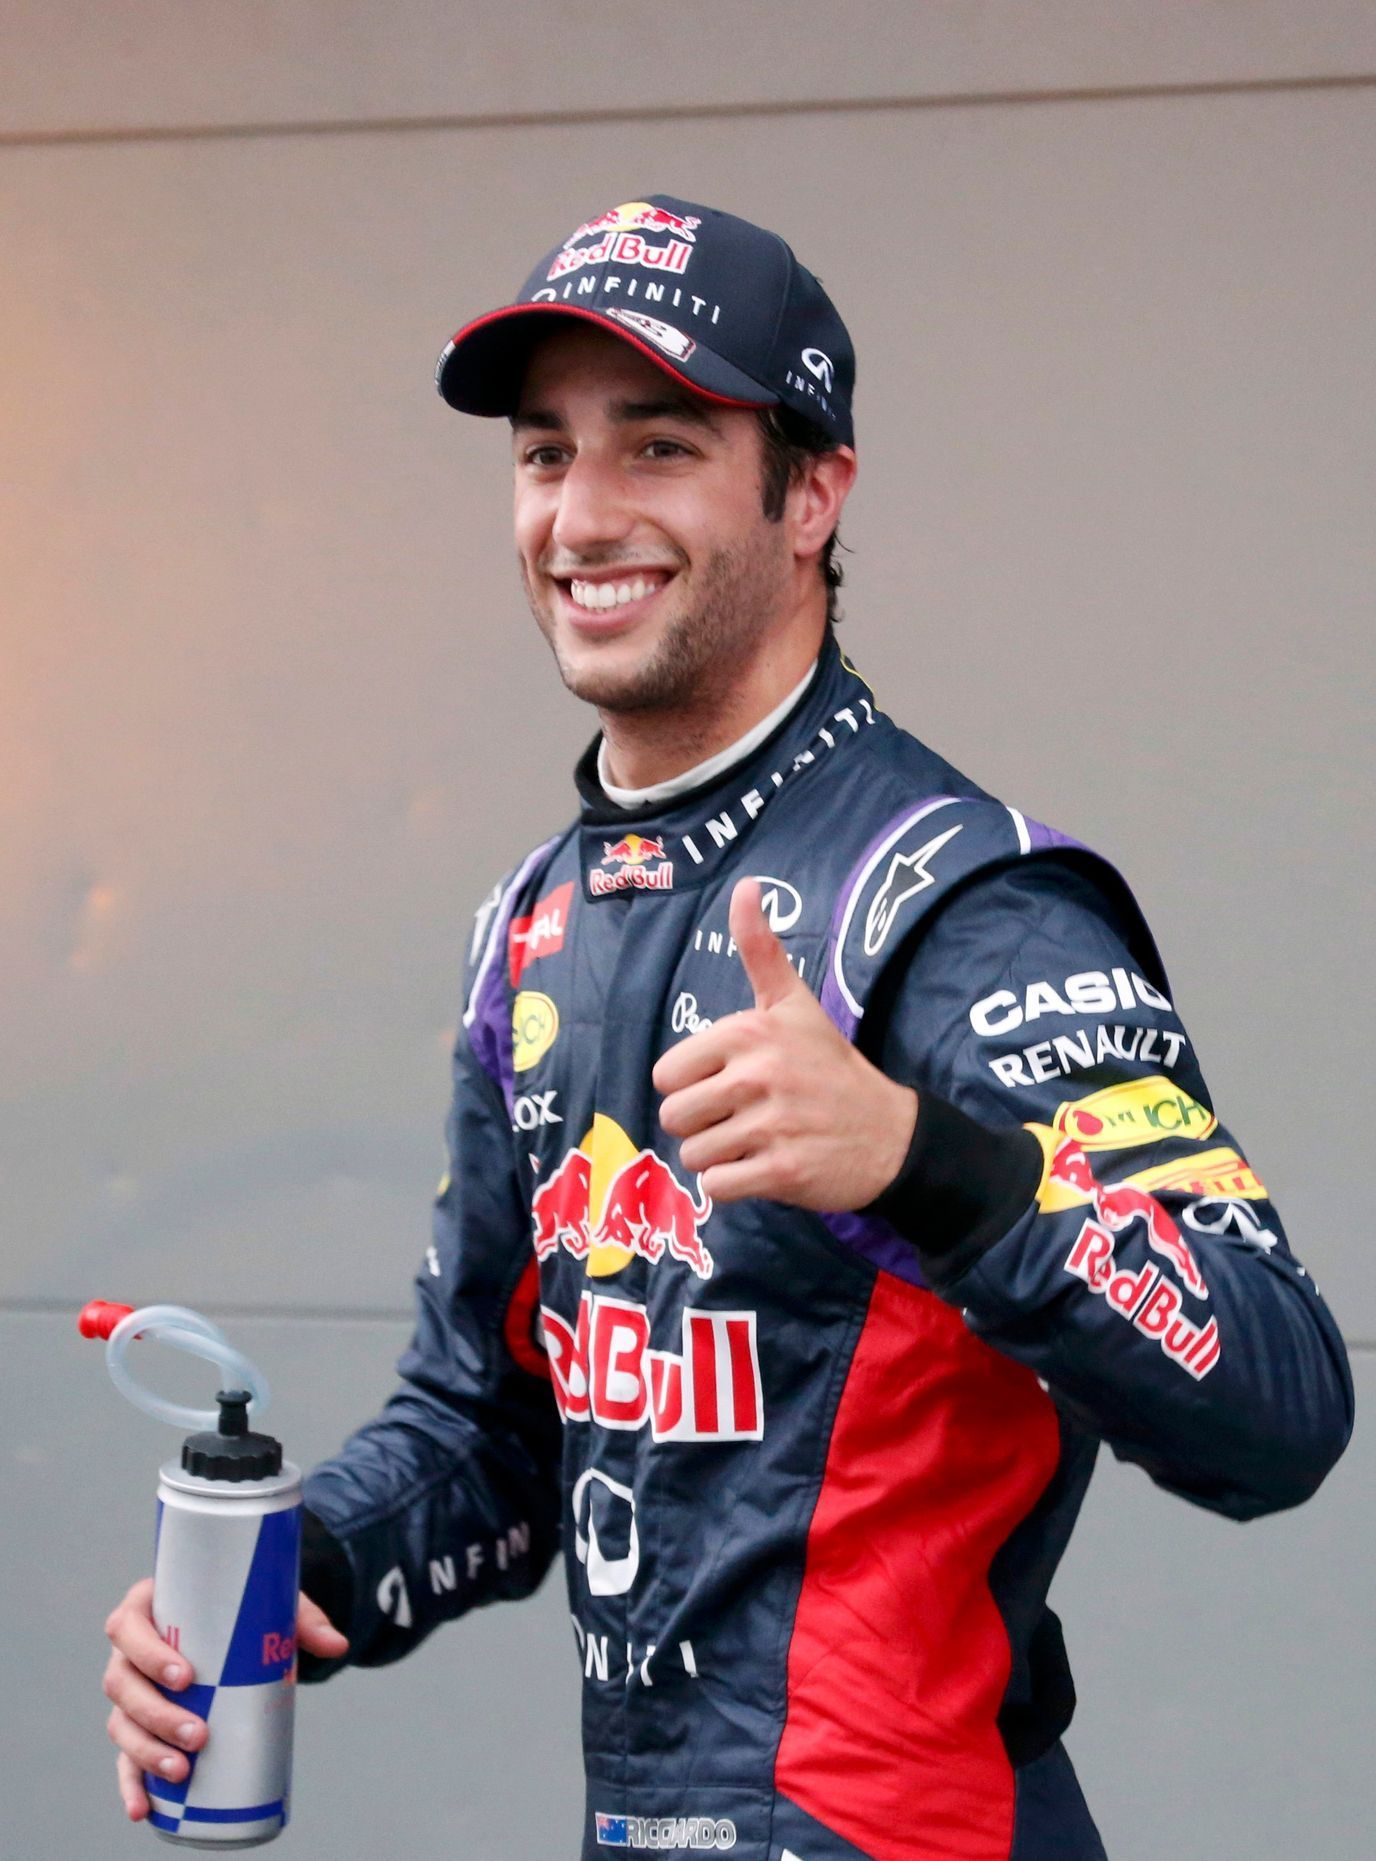 F1, VC Austrálie 2014: Daniel Ricciardo, Red Bull